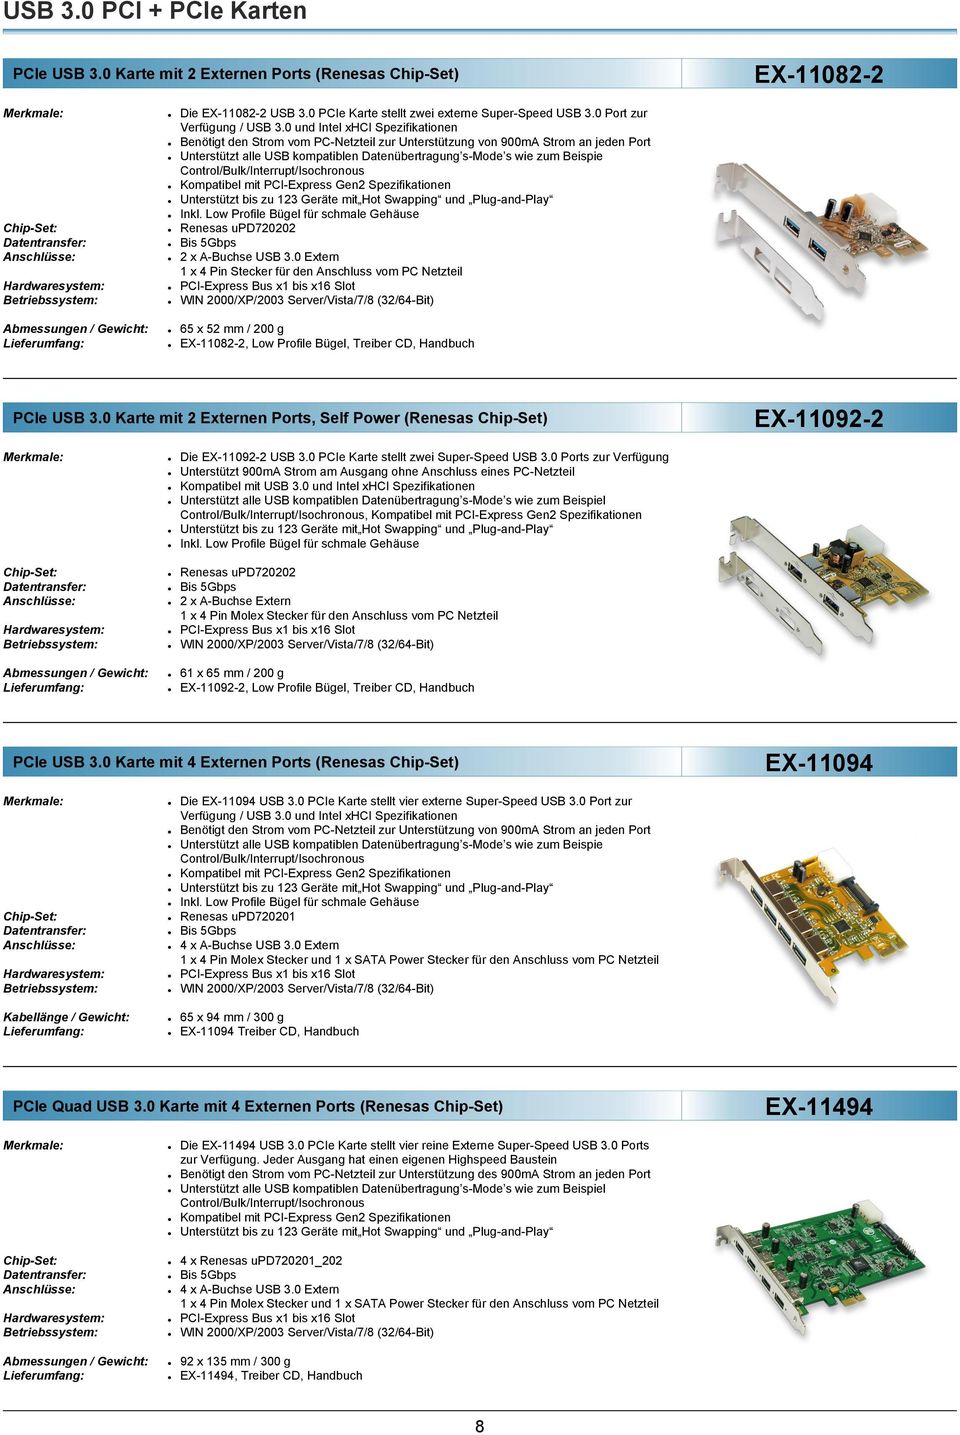 Kompatibel mit PCI-Express Gen2 Spezifikationen Inkl. Low Profile Bügel für schmale Gehäuse Renesas upd720202 2 x A-Buchse USB 3.